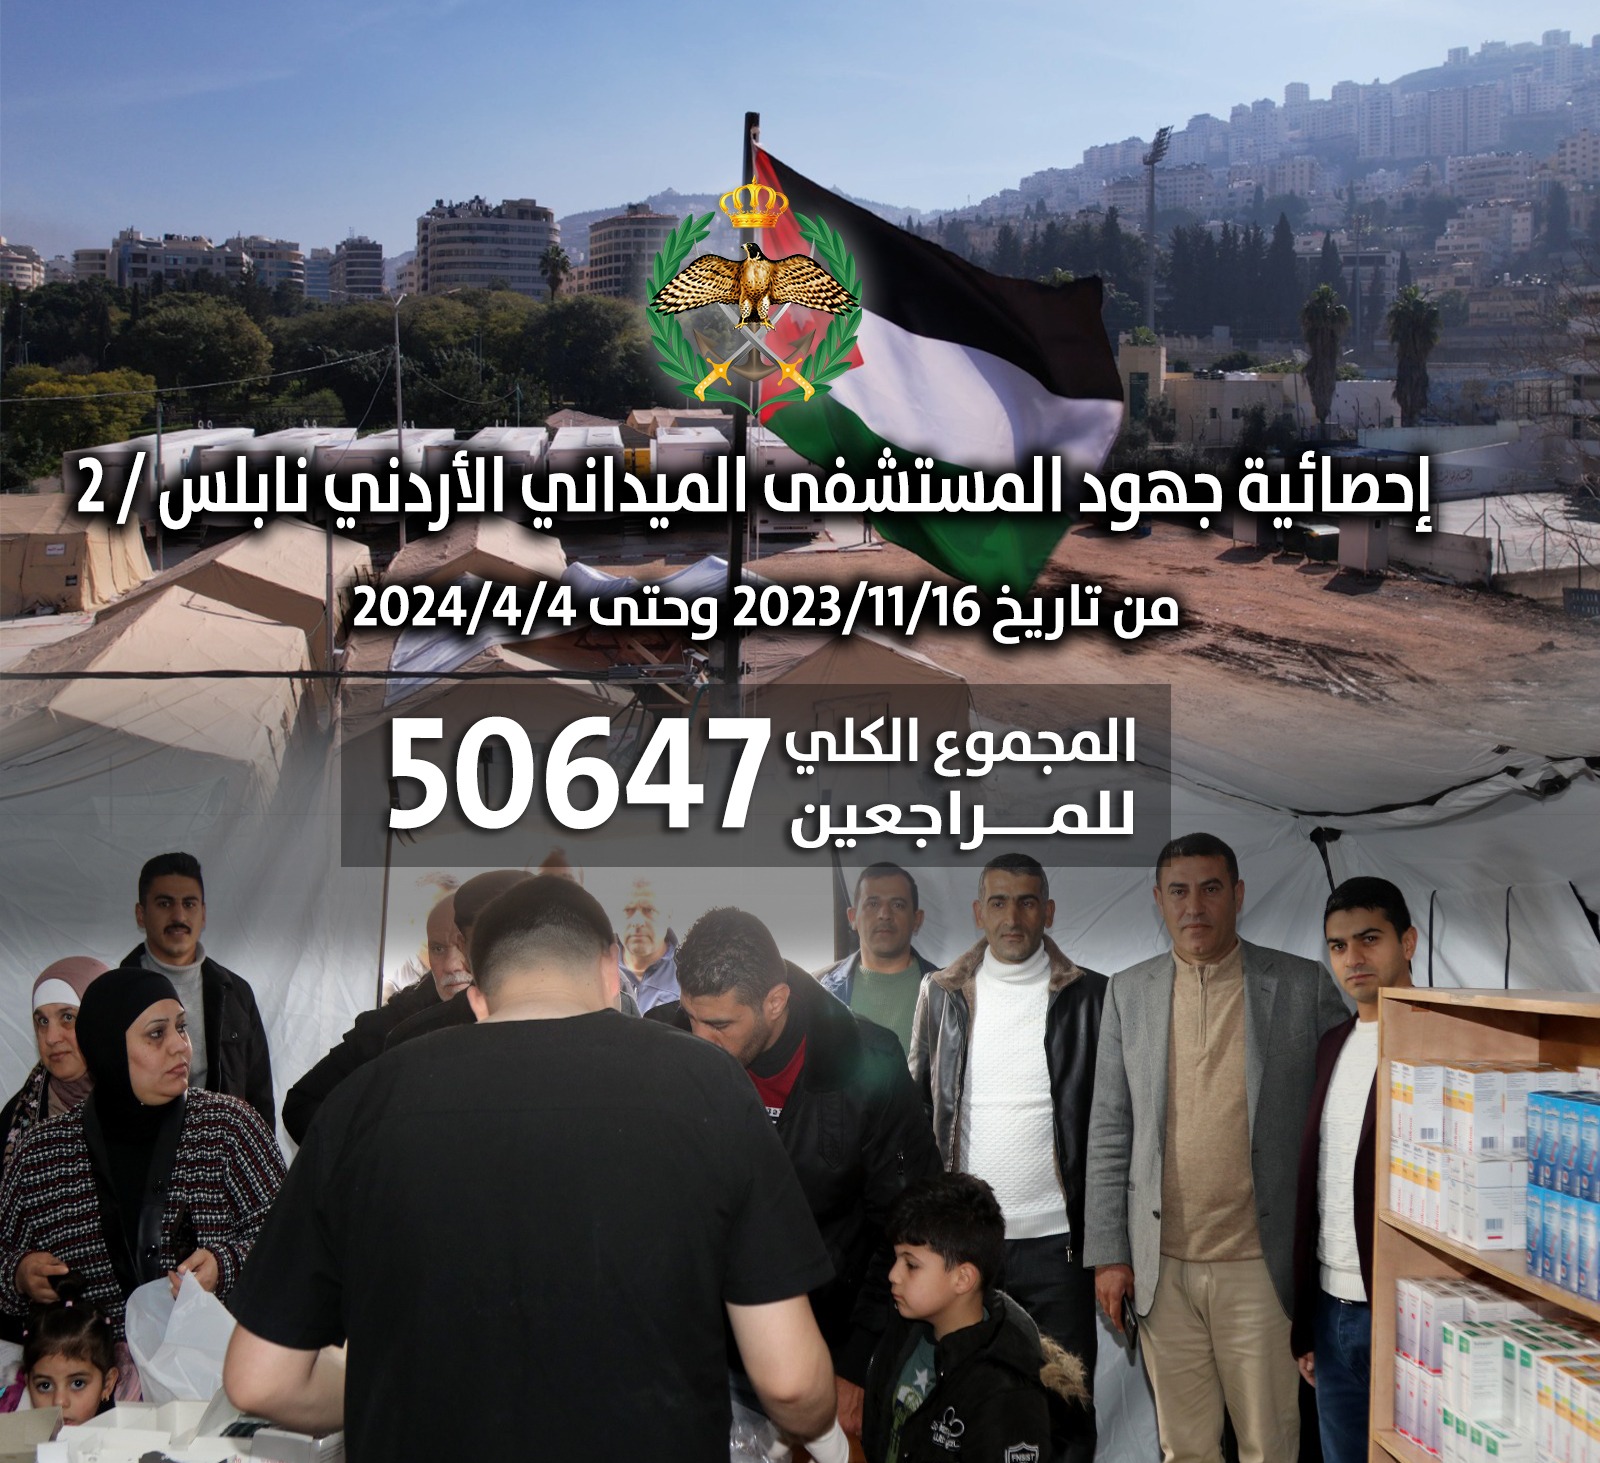 إحصائية لجهود المستشفيات الميدانية الأردنية في مساندة الأشقاء الفلسطينيين